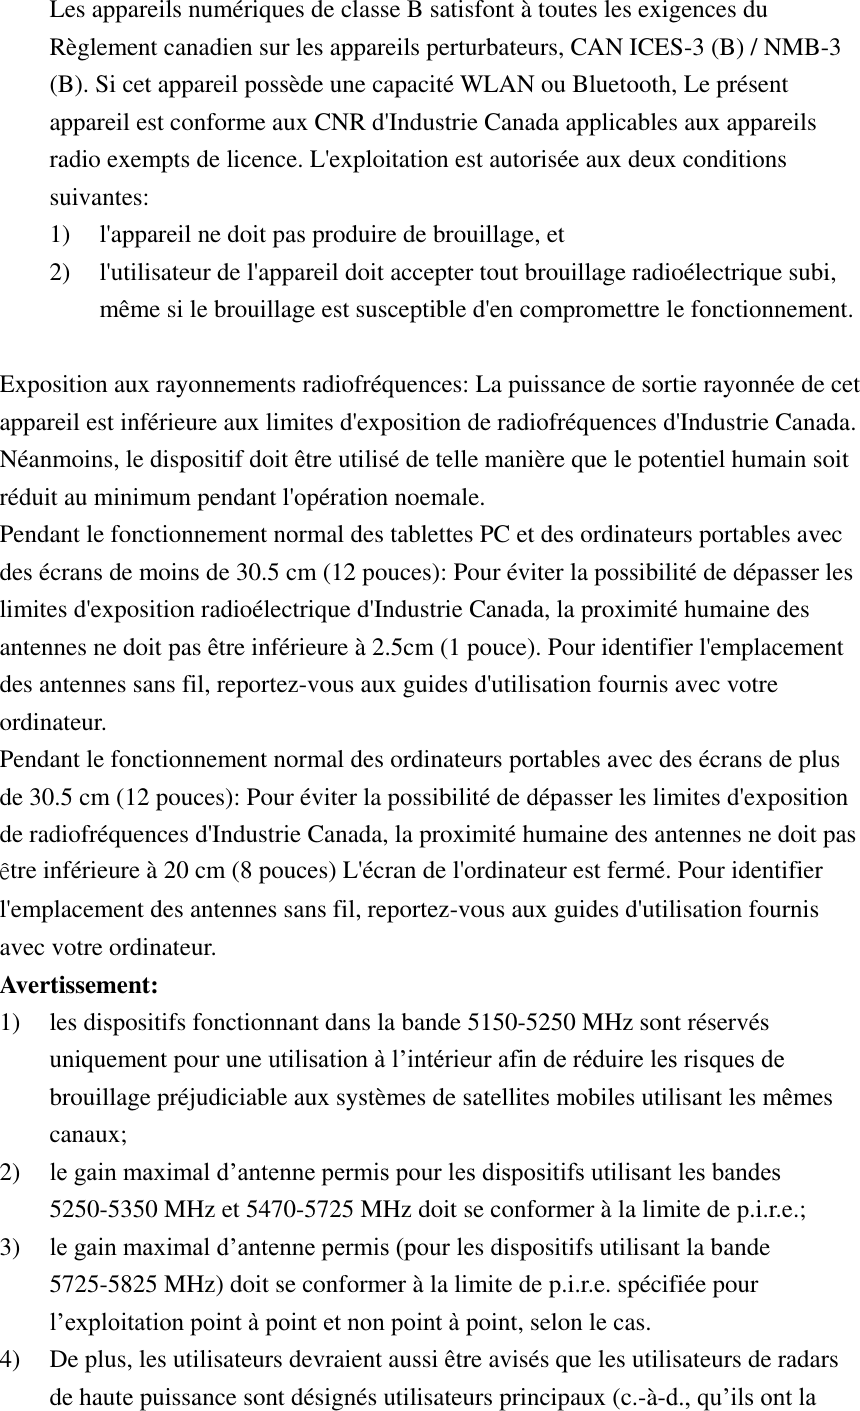 Les appareils numériques de classe B satisfont à toutes les exigences du Règlement canadien sur les appareils perturbateurs, CAN ICES-3 (B) / NMB-3 (B). Si cet appareil possède une capacité WLAN ou Bluetooth, Le présent appareil est conforme aux CNR d&apos;Industrie Canada applicables aux appareils radio exempts de licence. L&apos;exploitation est autorisée aux deux conditions suivantes:   1) l&apos;appareil ne doit pas produire de brouillage, et   2) l&apos;utilisateur de l&apos;appareil doit accepter tout brouillage radioélectrique subi, même si le brouillage est susceptible d&apos;en compromettre le fonctionnement.  Exposition aux rayonnements radiofréquences: La puissance de sortie rayonnée de cet appareil est inférieure aux limites d&apos;exposition de radiofréquences d&apos;Industrie Canada. Néanmoins, le dispositif doit être utilisé de telle manière que le potentiel humain soit réduit au minimum pendant l&apos;opération noemale. Pendant le fonctionnement normal des tablettes PC et des ordinateurs portables avec des écrans de moins de 30.5 cm (12 pouces): Pour éviter la possibilité de dépasser les limites d&apos;exposition radioélectrique d&apos;Industrie Canada, la proximité humaine des antennes ne doit pas être inférieure à 2.5cm (1 pouce). Pour identifier l&apos;emplacement des antennes sans fil, reportez-vous aux guides d&apos;utilisation fournis avec votre ordinateur. Pendant le fonctionnement normal des ordinateurs portables avec des écrans de plus de 30.5 cm (12 pouces): Pour éviter la possibilité de dépasser les limites d&apos;exposition de radiofréquences d&apos;Industrie Canada, la proximité humaine des antennes ne doit pas être inférieure à 20 cm (8 pouces) L&apos;écran de l&apos;ordinateur est fermé. Pour identifier l&apos;emplacement des antennes sans fil, reportez-vous aux guides d&apos;utilisation fournis avec votre ordinateur. Avertissement: 1) les dispositifs fonctionnant dans la bande 5150-5250 MHz sont réservés uniquement pour une utilisation à l’intérieur afin de réduire les risques de brouillage préjudiciable aux systèmes de satellites mobiles utilisant les mêmes canaux; 2) le gain maximal d’antenne permis pour les dispositifs utilisant les bandes 5250-5350 MHz et 5470-5725 MHz doit se conformer à la limite de p.i.r.e.; 3) le gain maximal d’antenne permis (pour les dispositifs utilisant la bande 5725-5825 MHz) doit se conformer à la limite de p.i.r.e. spécifiée pour l’exploitation point à point et non point à point, selon le cas. 4) De plus, les utilisateurs devraient aussi être avisés que les utilisateurs de radars de haute puissance sont désignés utilisateurs principaux (c.-à-d., qu’ils ont la 